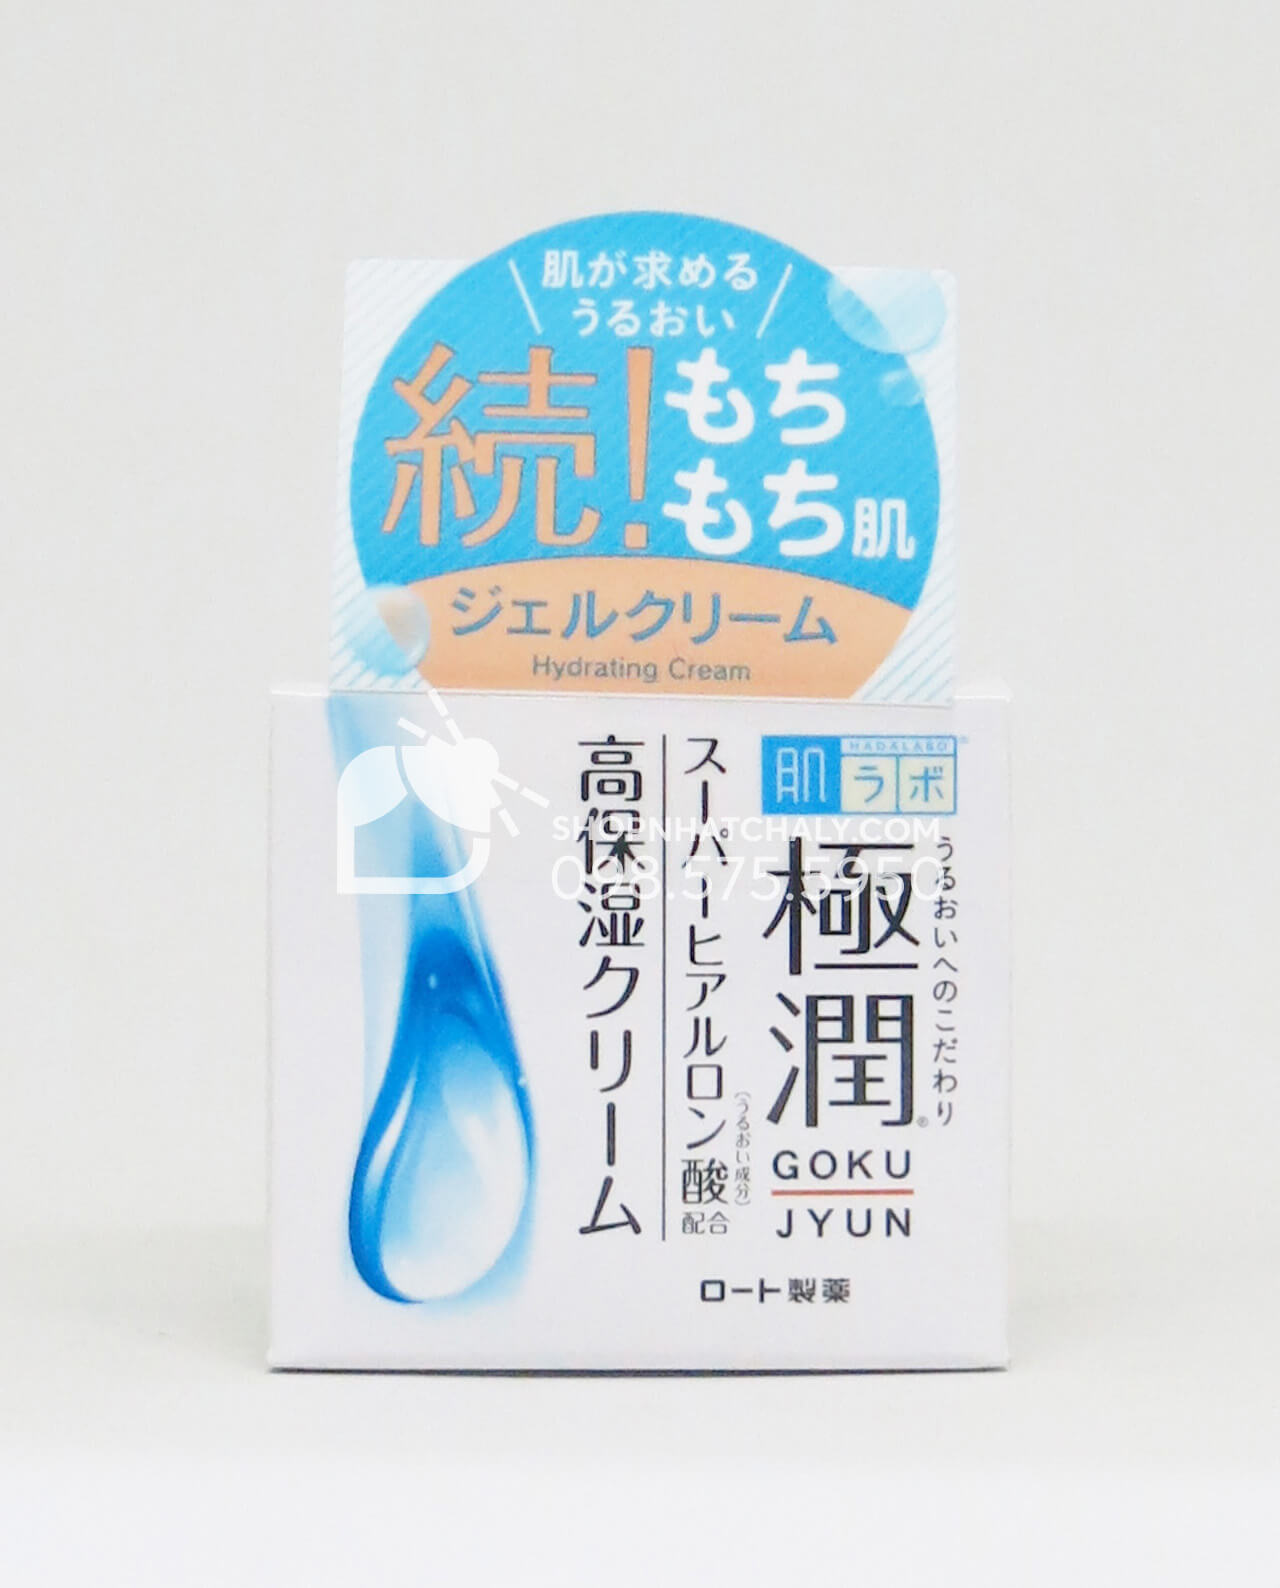 Kem dưỡng ẩm Hada Labo Nhật cho da khô Super Hyaluronic 50gr mẫu mới